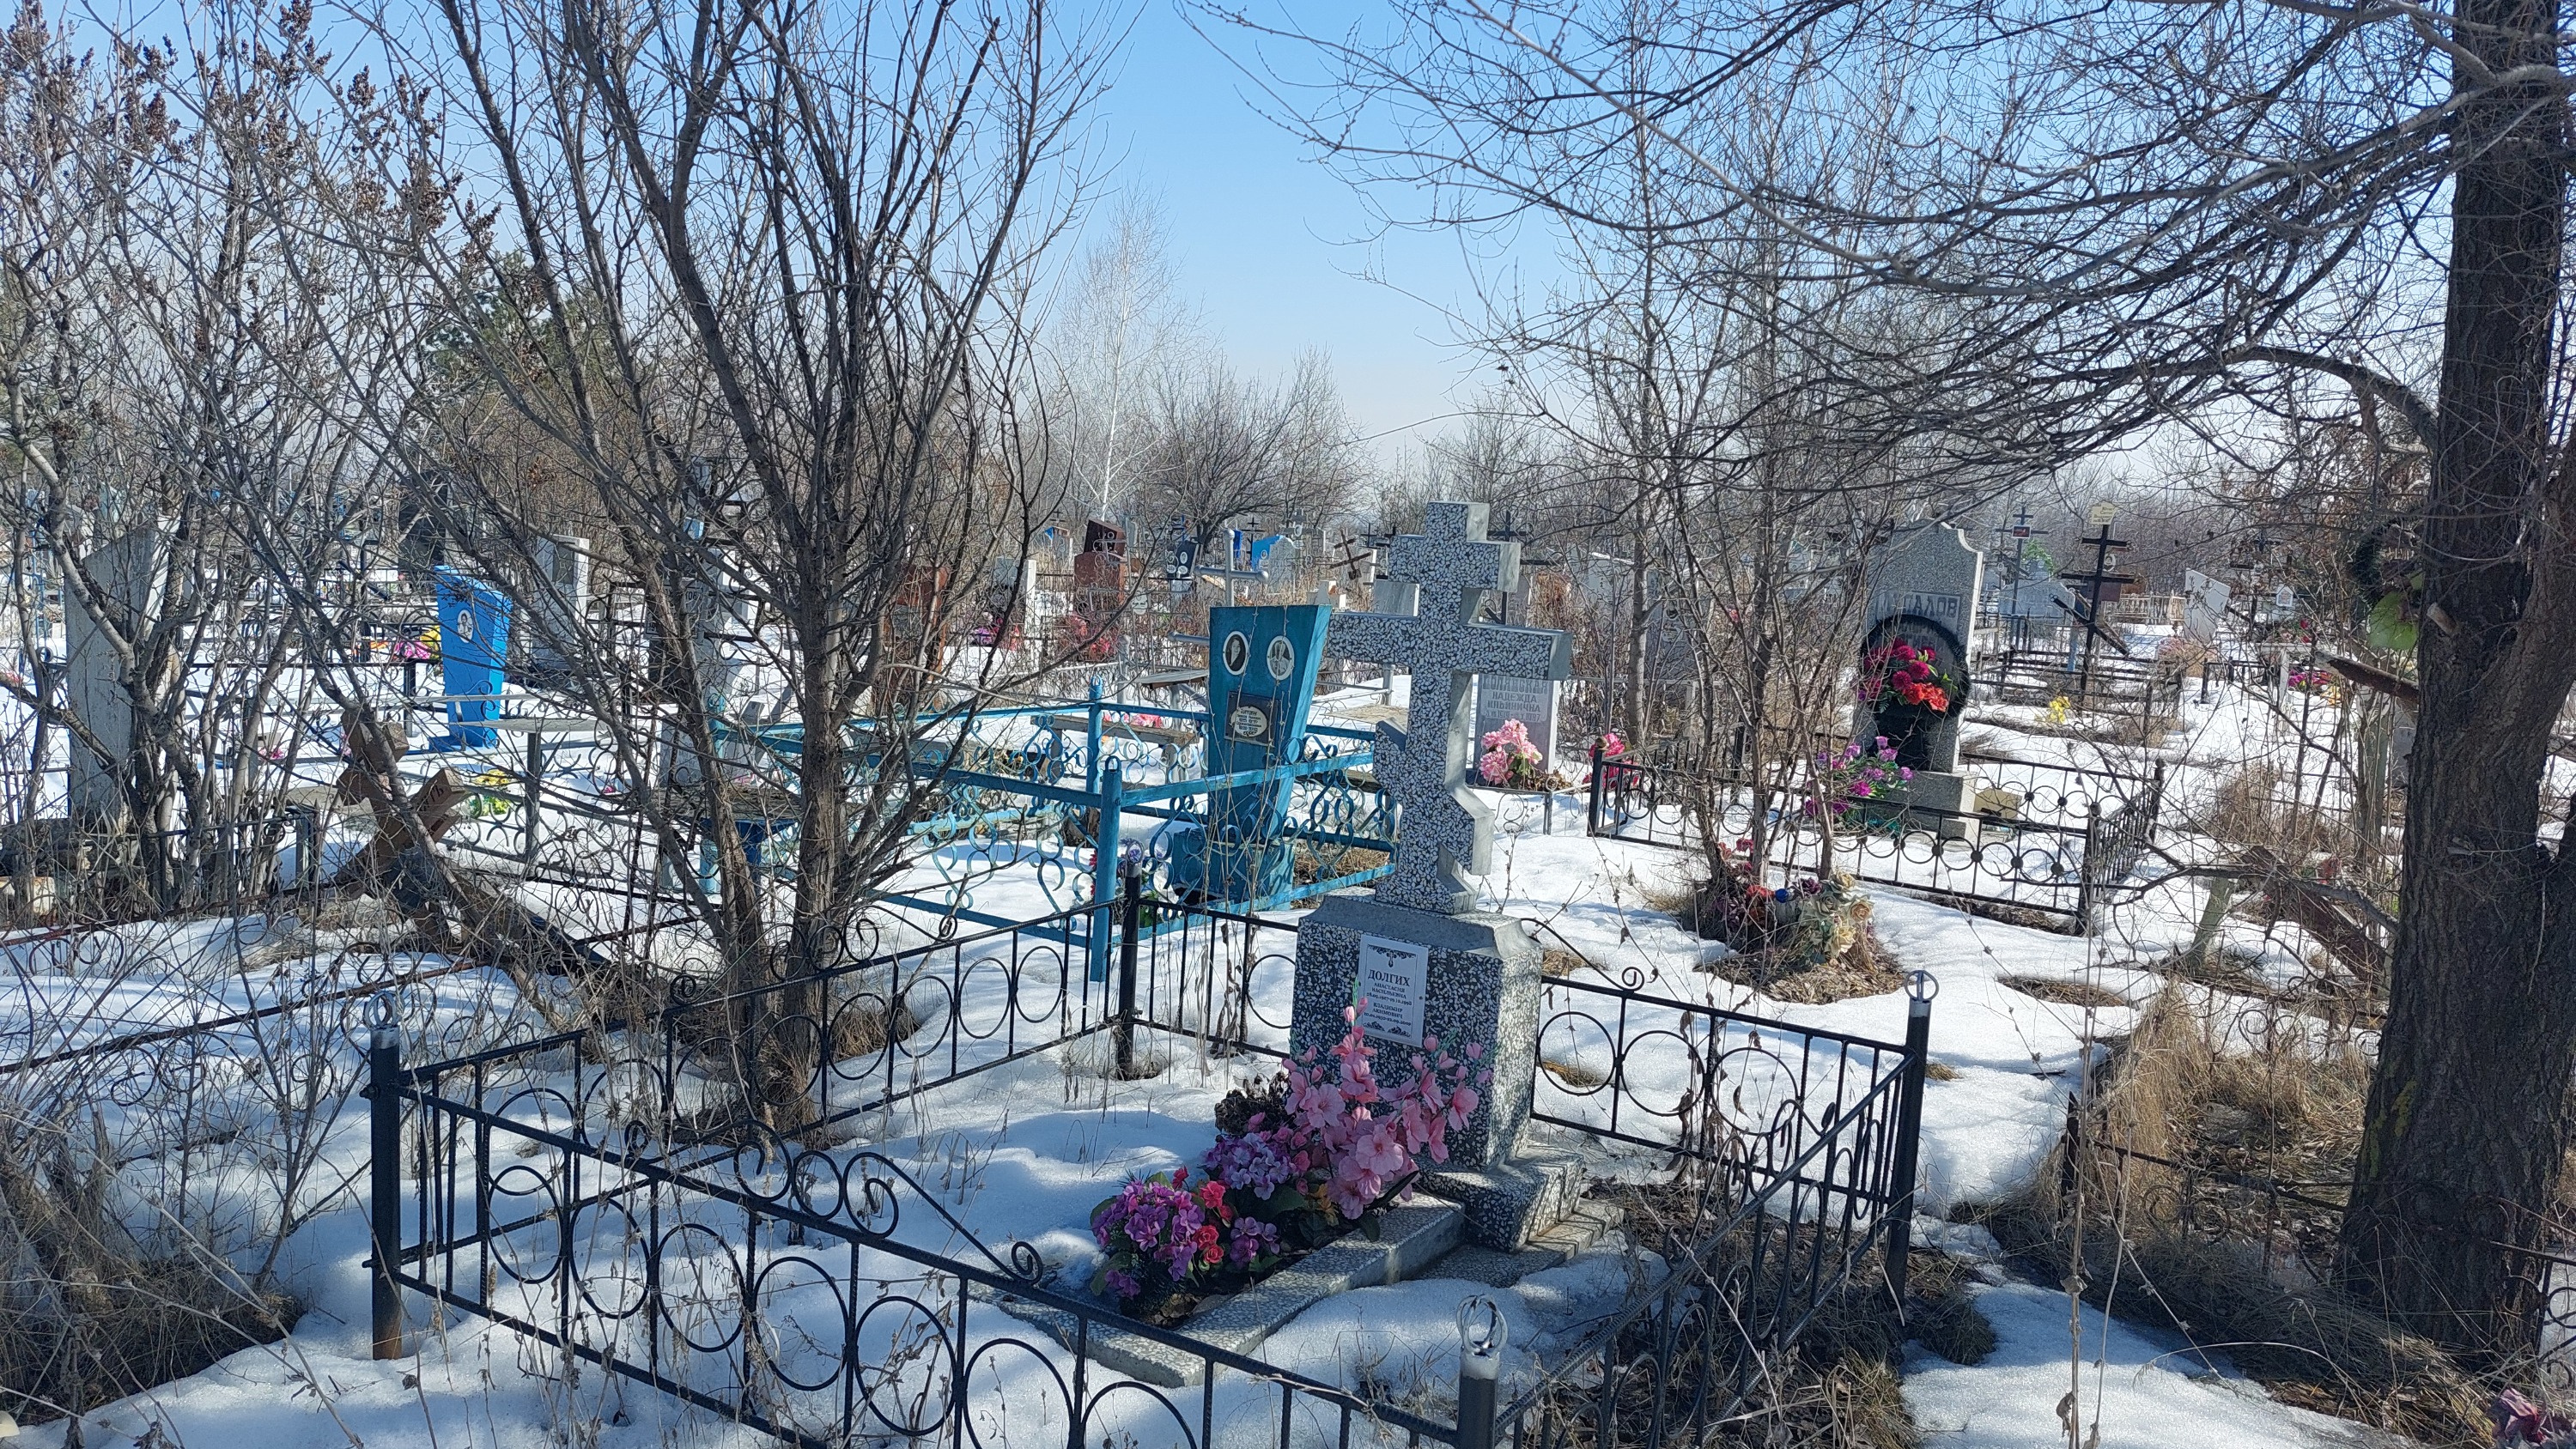 Кладбища и аттракционы Балаково: кто занимается ритуальным бизнесом в городе энергетиков